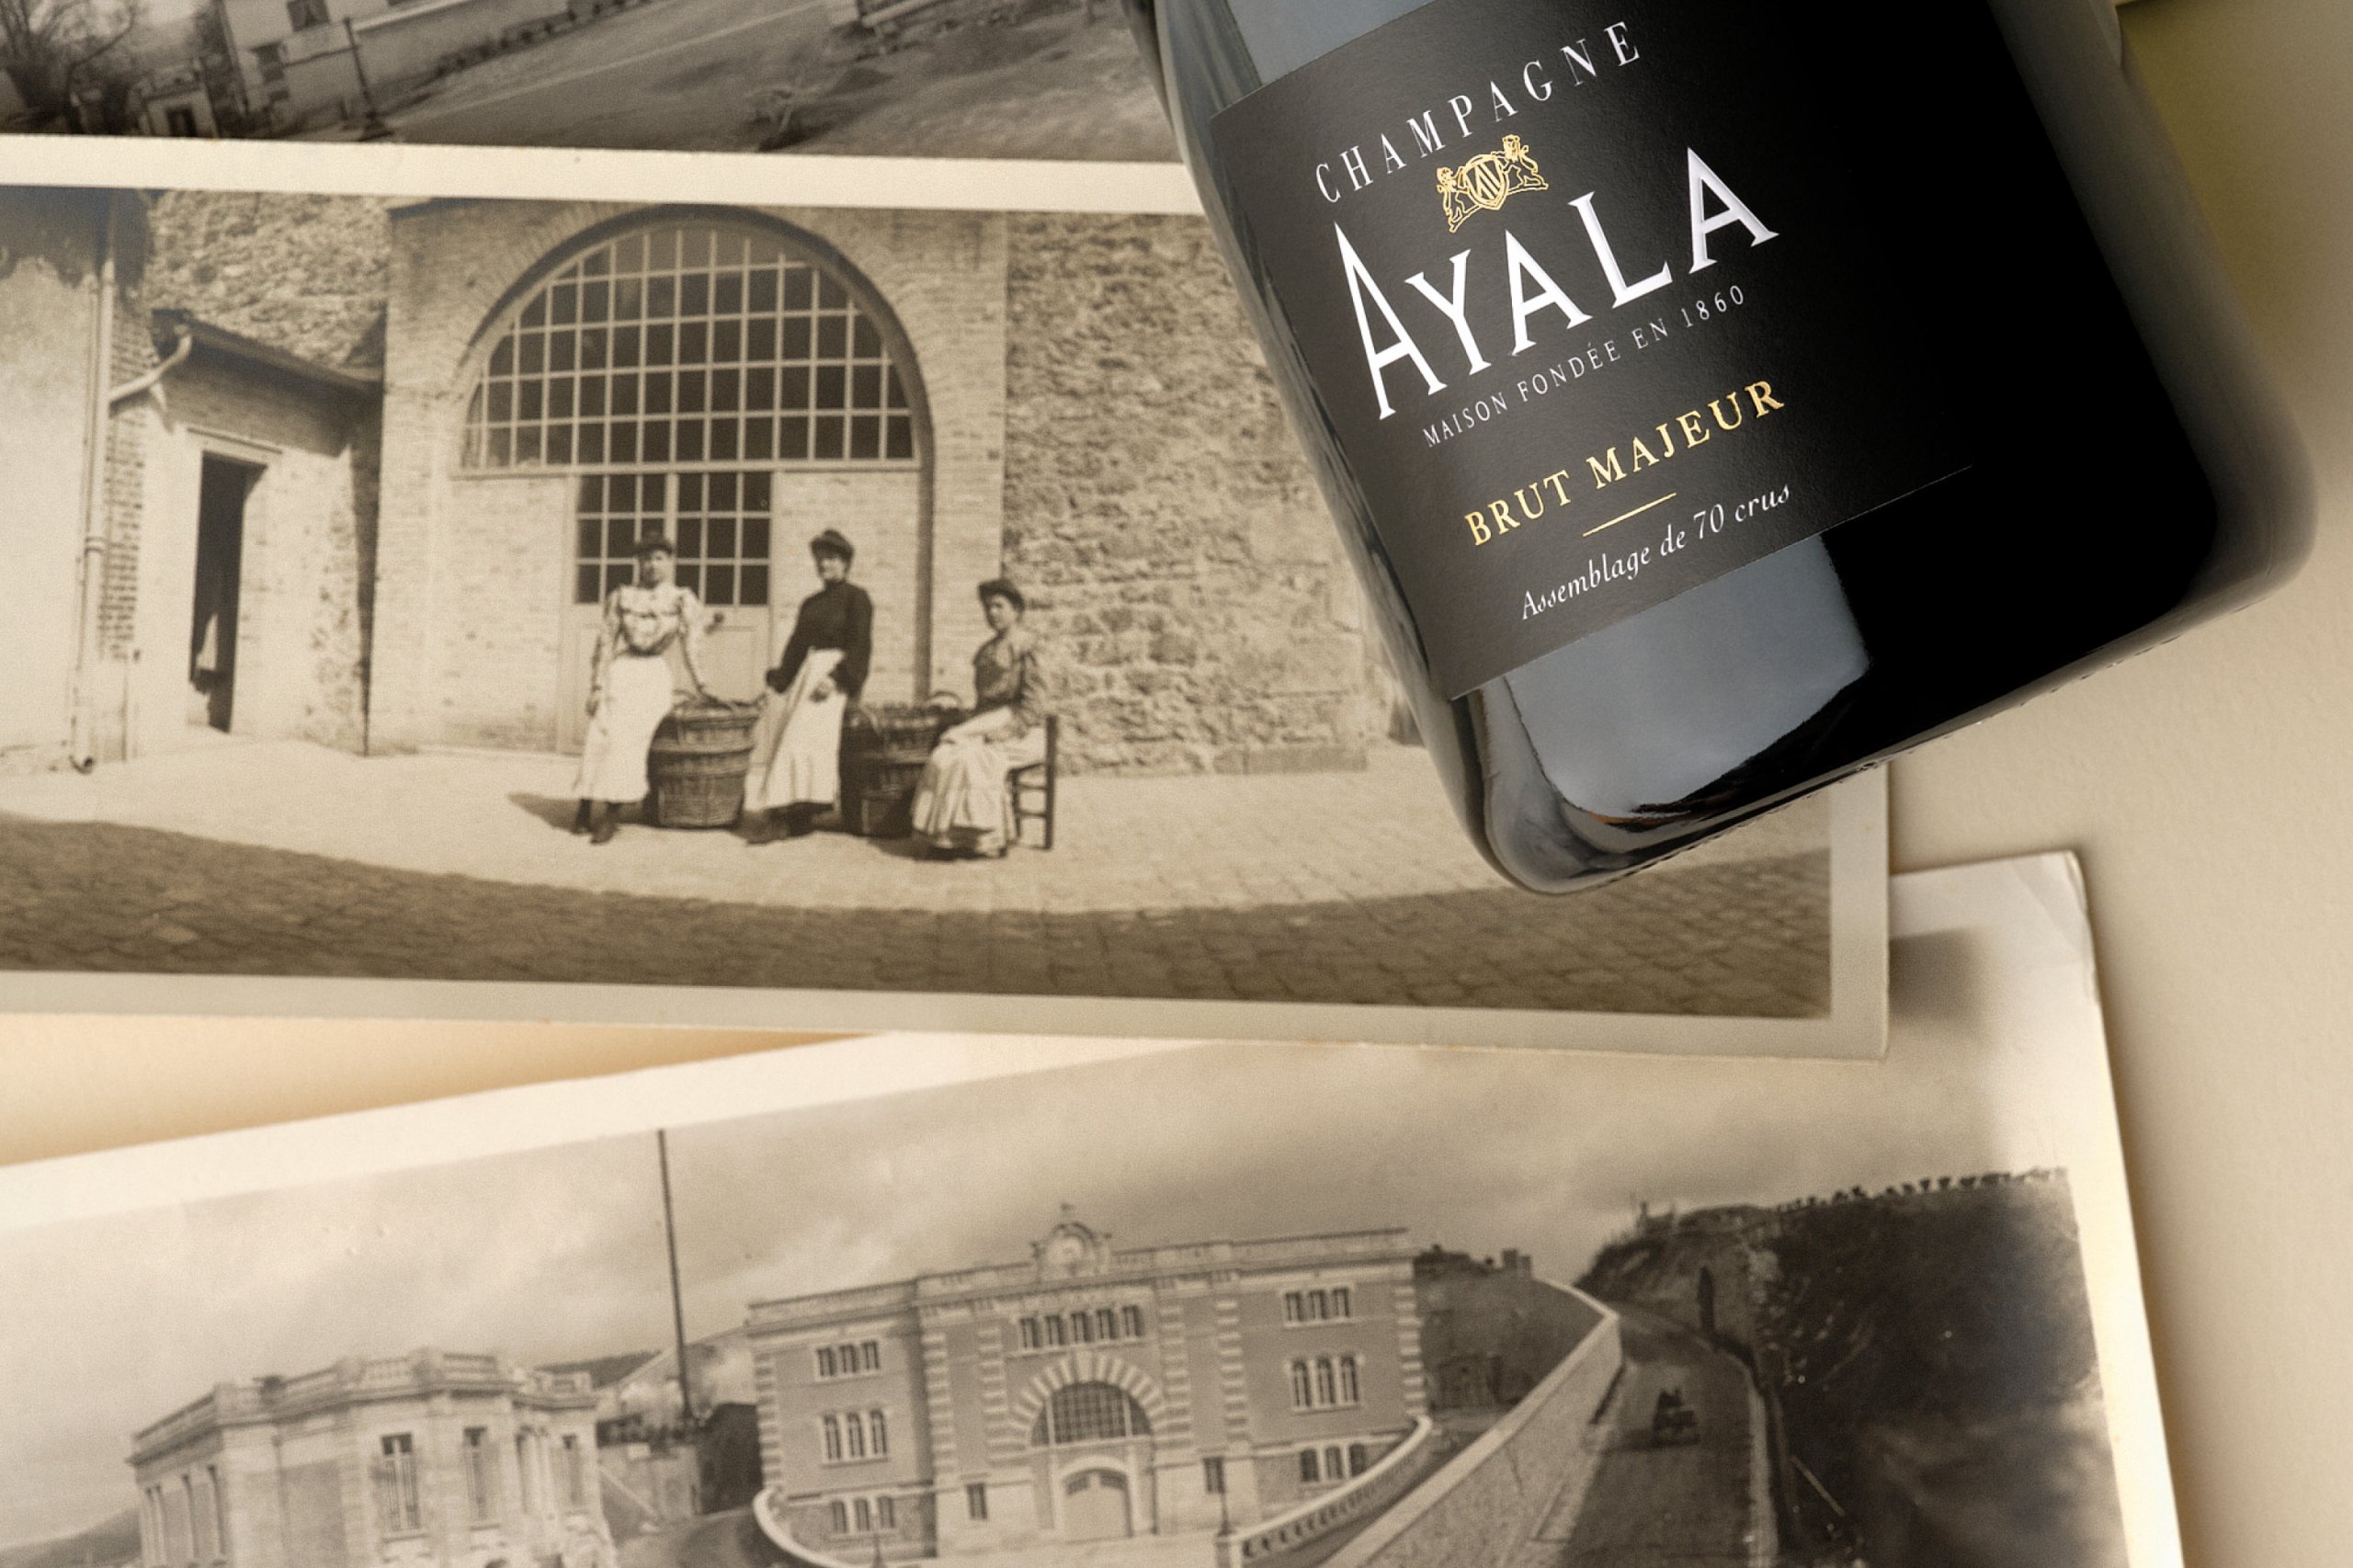 Nouvel assemblage, nouveau flacon - Champagne Ayala